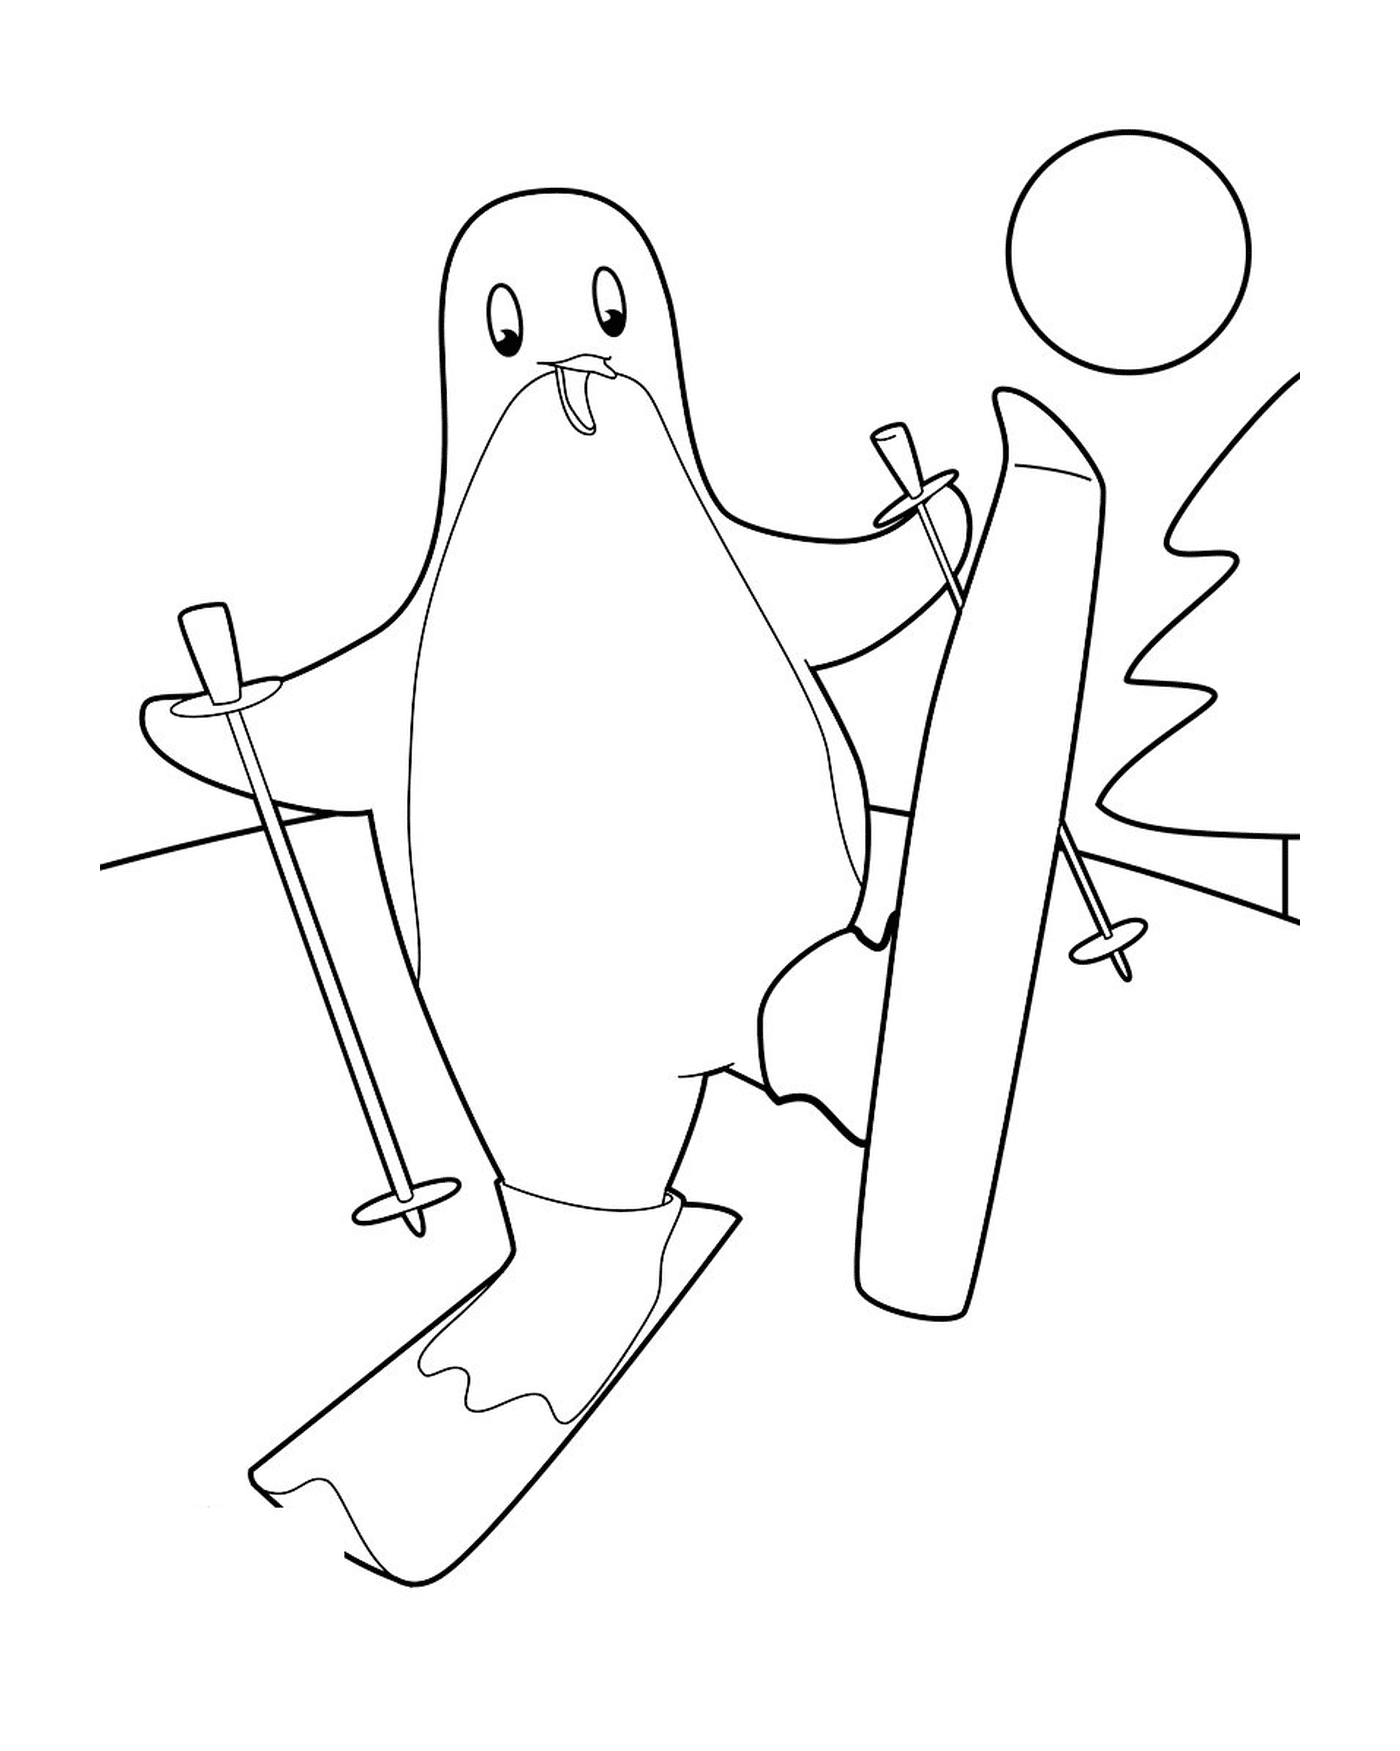  Пингвин катается на лыжах 